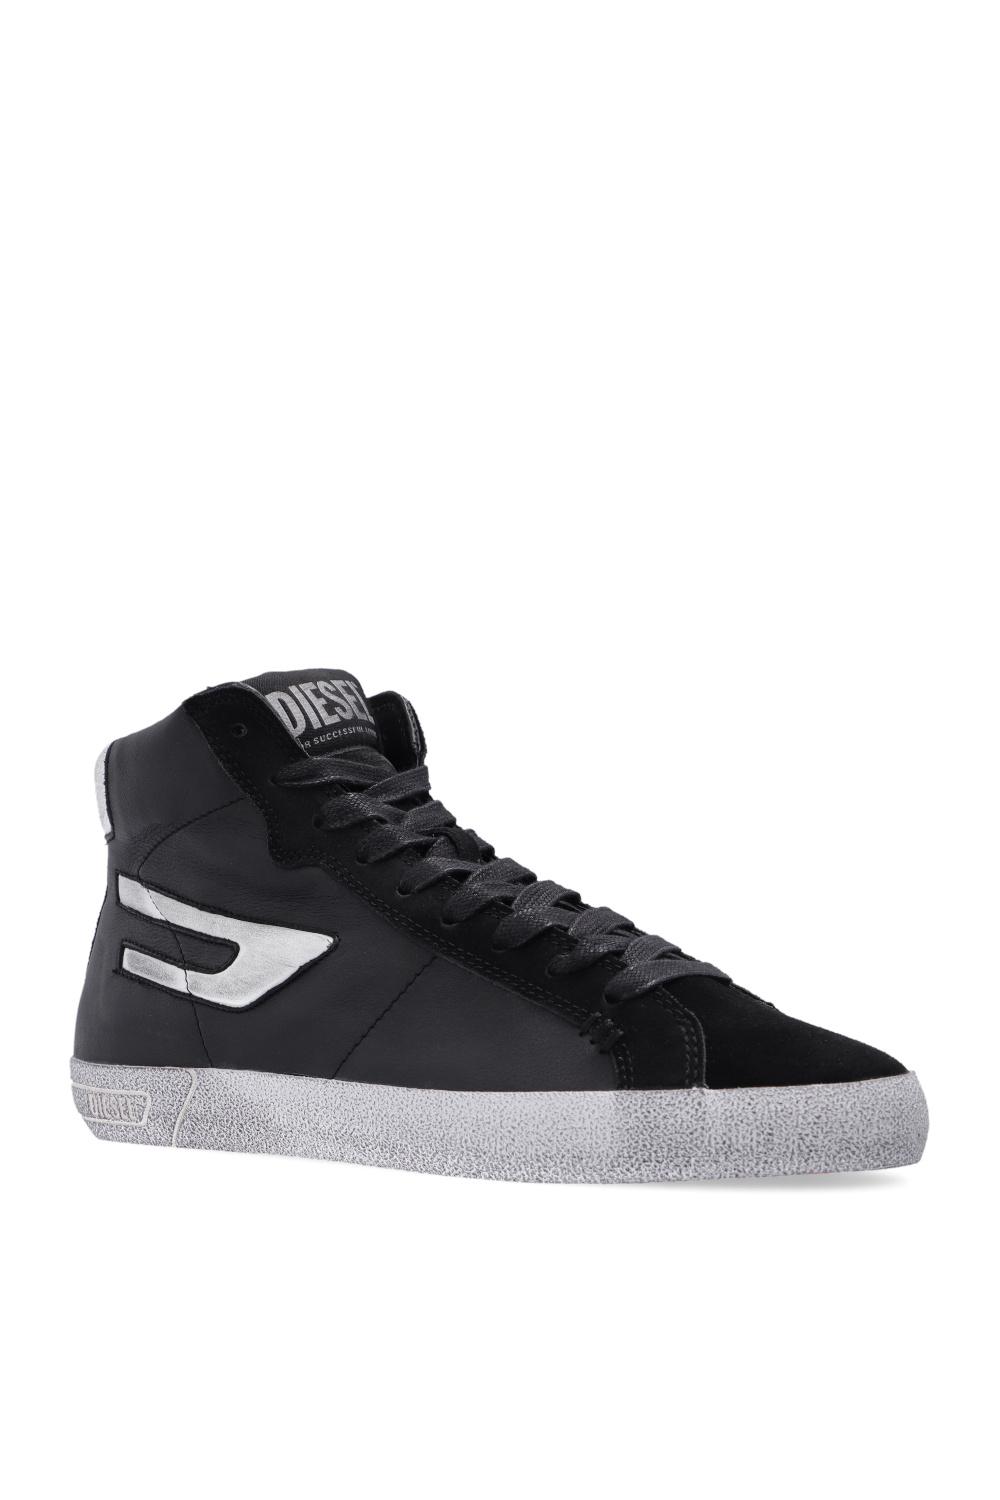 DIESEL 's-leroji Mid' Sneakers in Black | Lyst UK